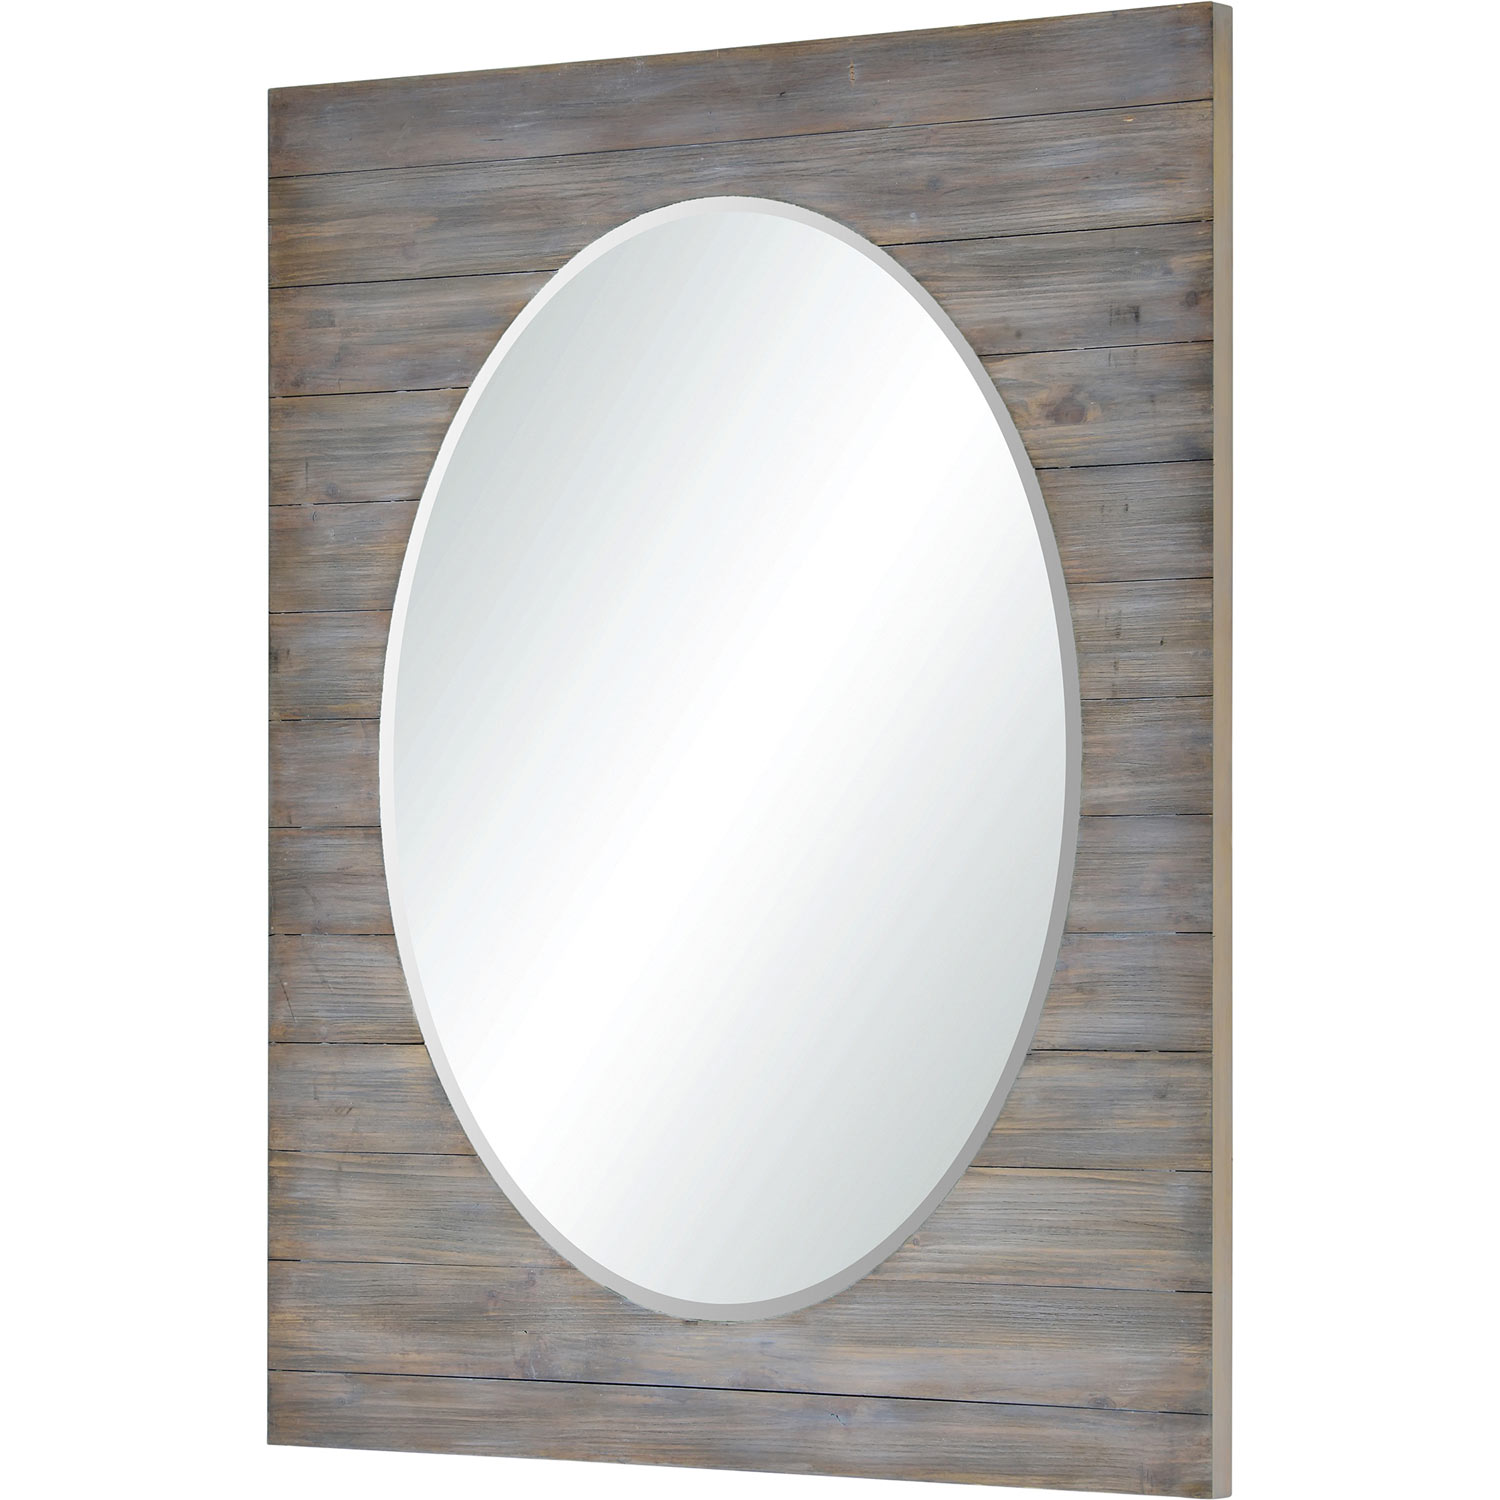 Ren-Wil Keenan Rectangle Mirror - Gray Wash